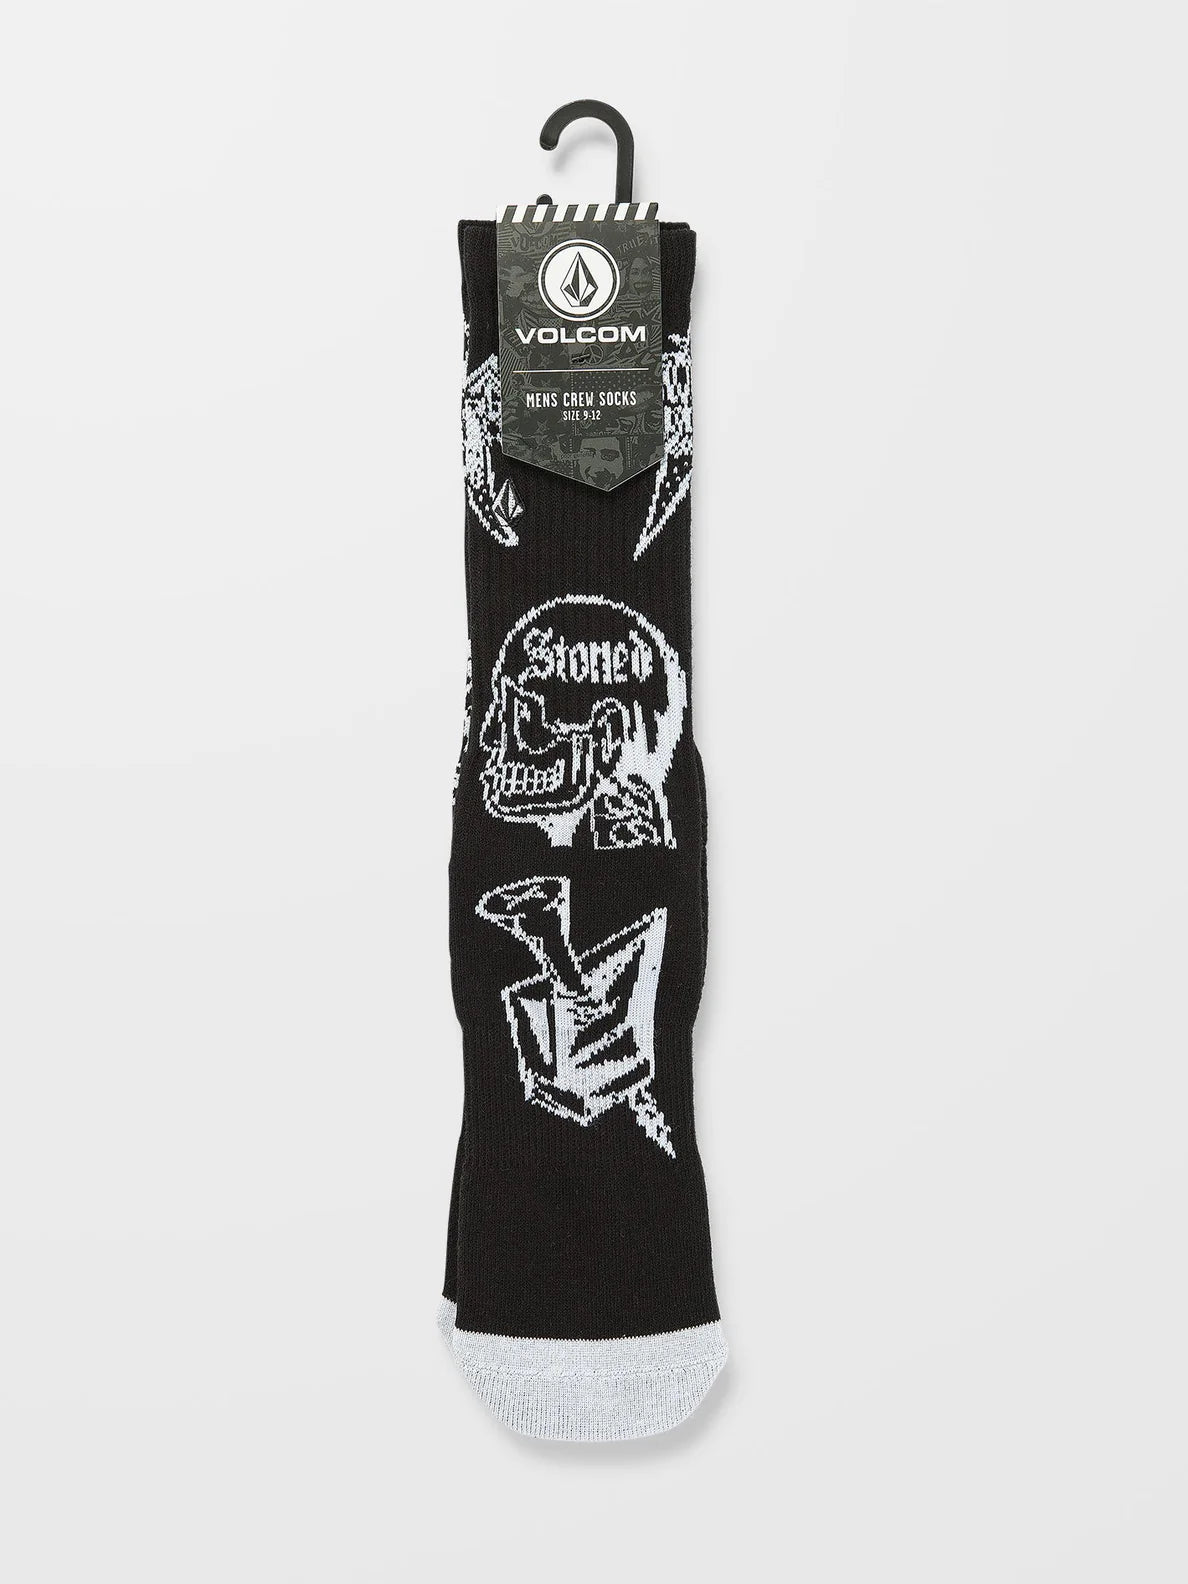 Chaussettes Volcom About Time - Noir | Nouveaux produits | Produits les plus récents | Produits les plus vendus | surfdevils.com